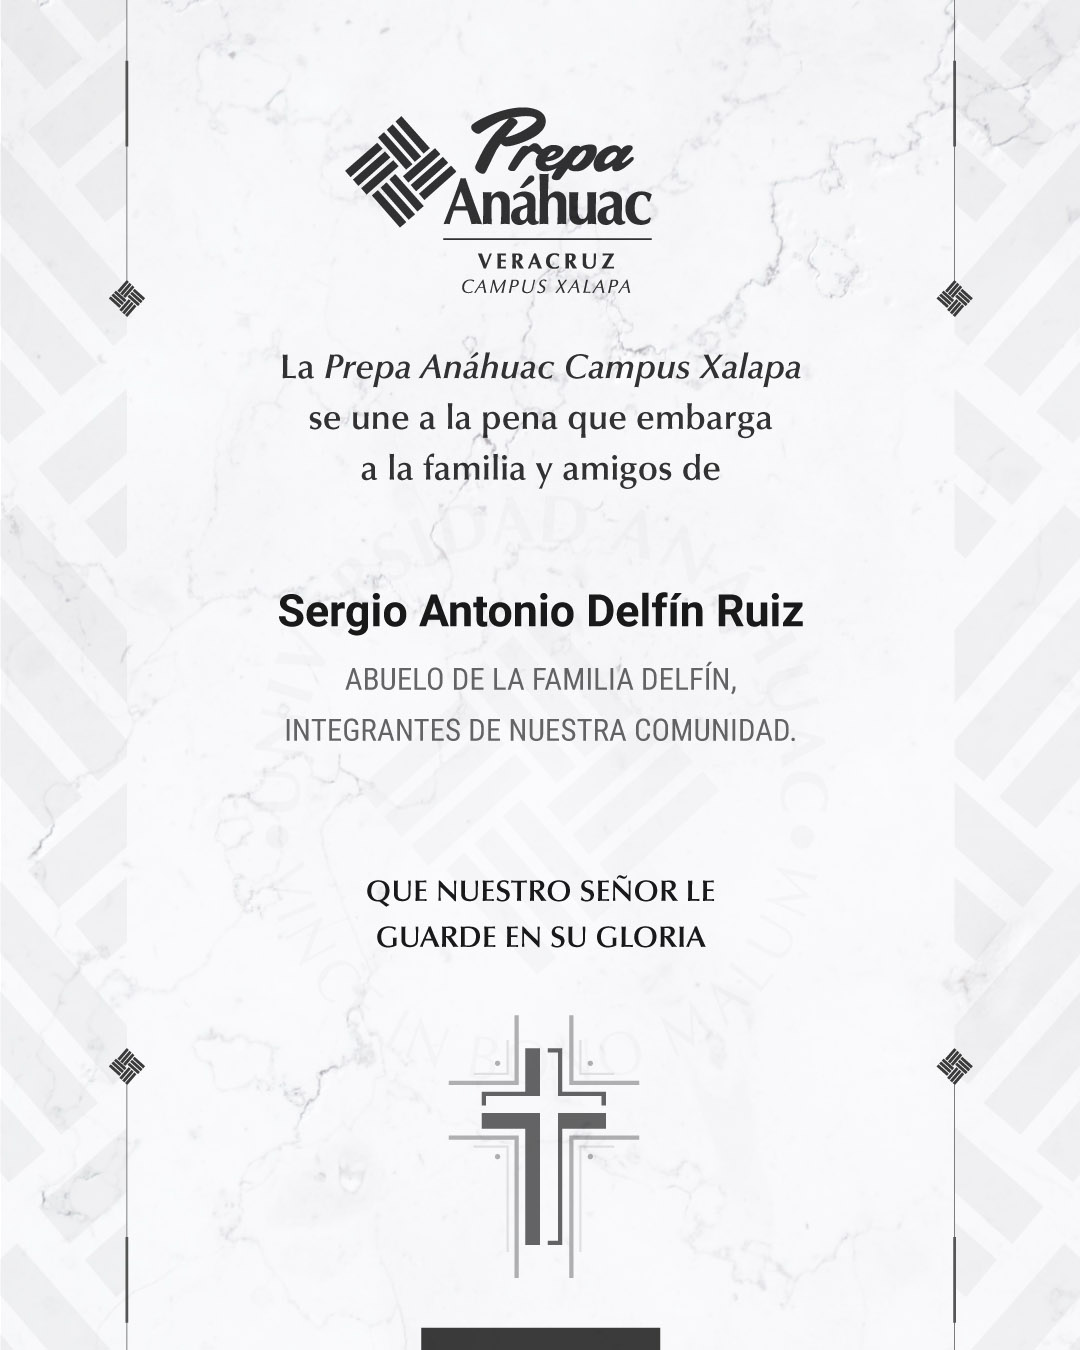 11 / 18 - Sergio Antonio Delfín Ruiz